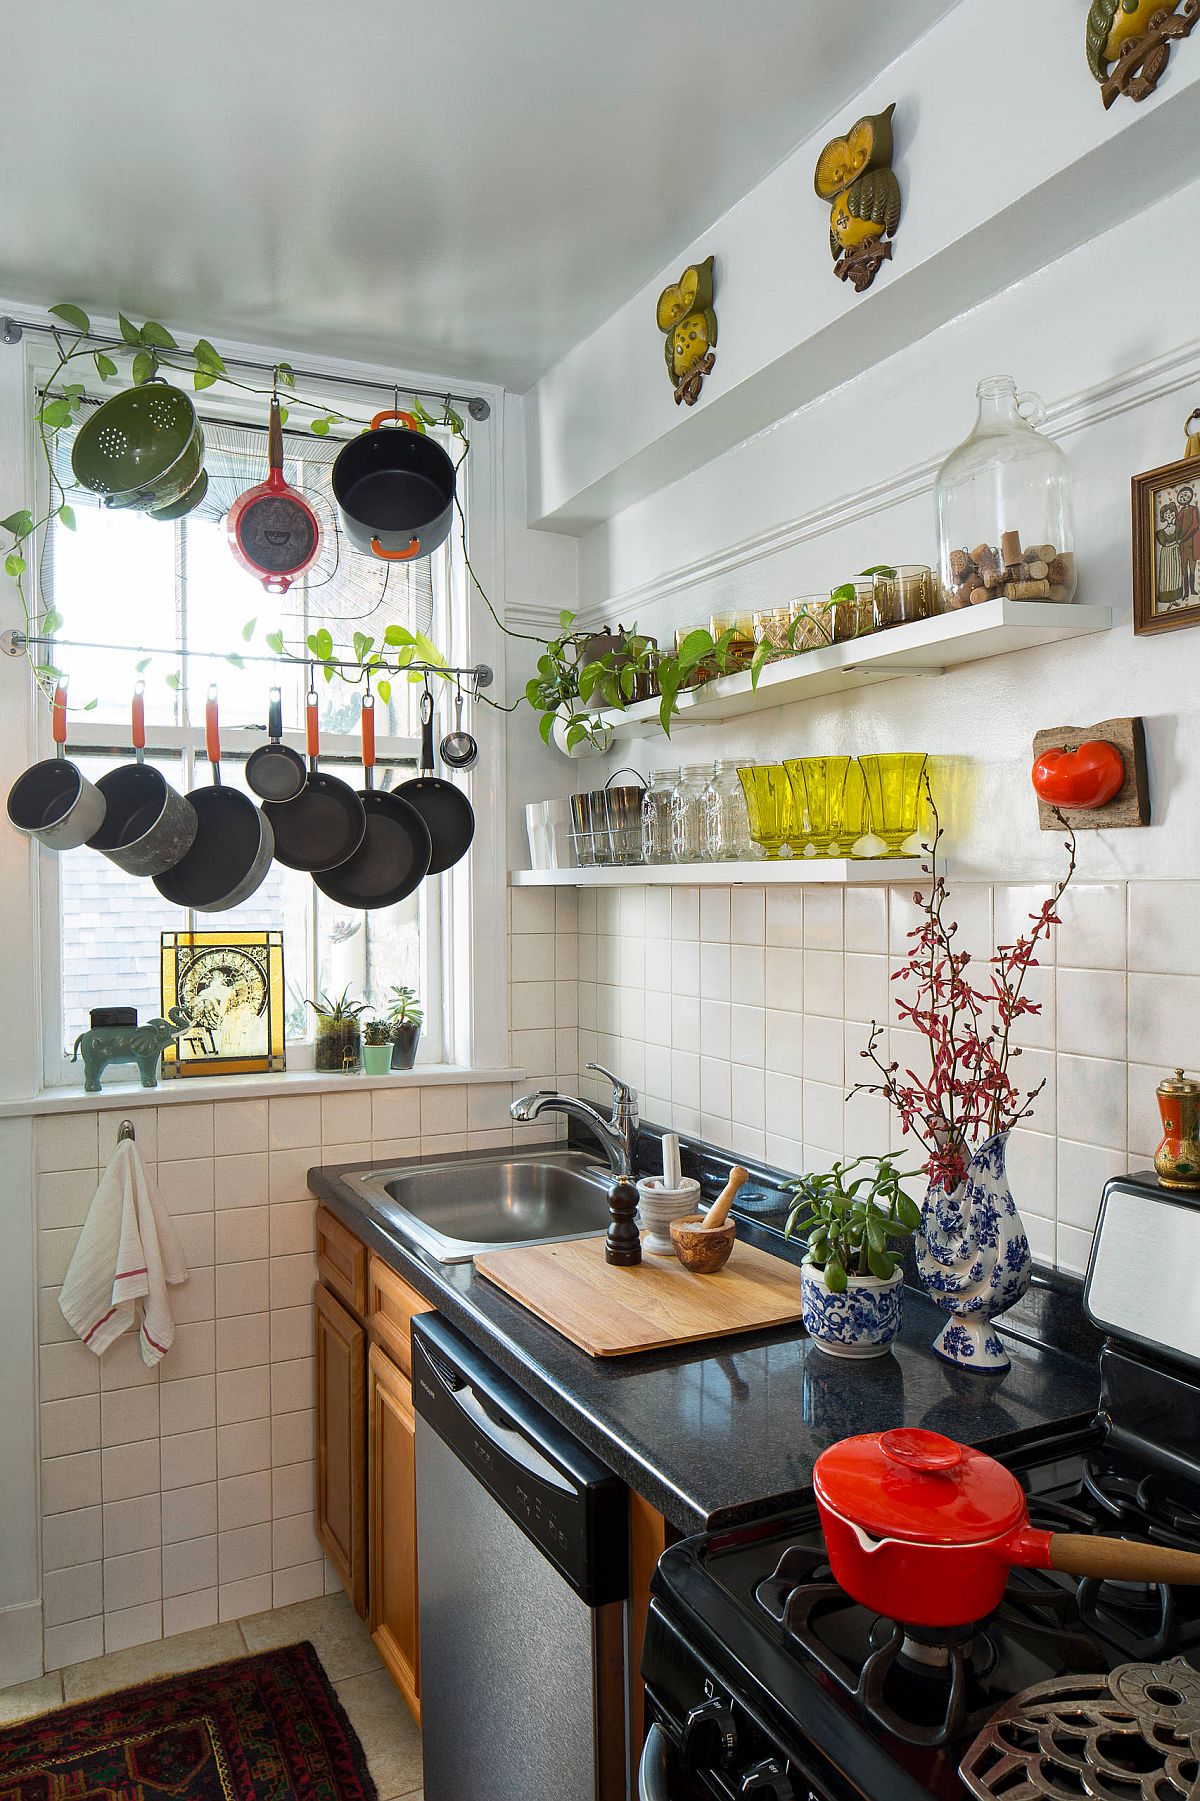 Kể cả bạn chỉ có một góc bếp nhỏ thôi vẫn có thể dùng cây xanh để trang trí.